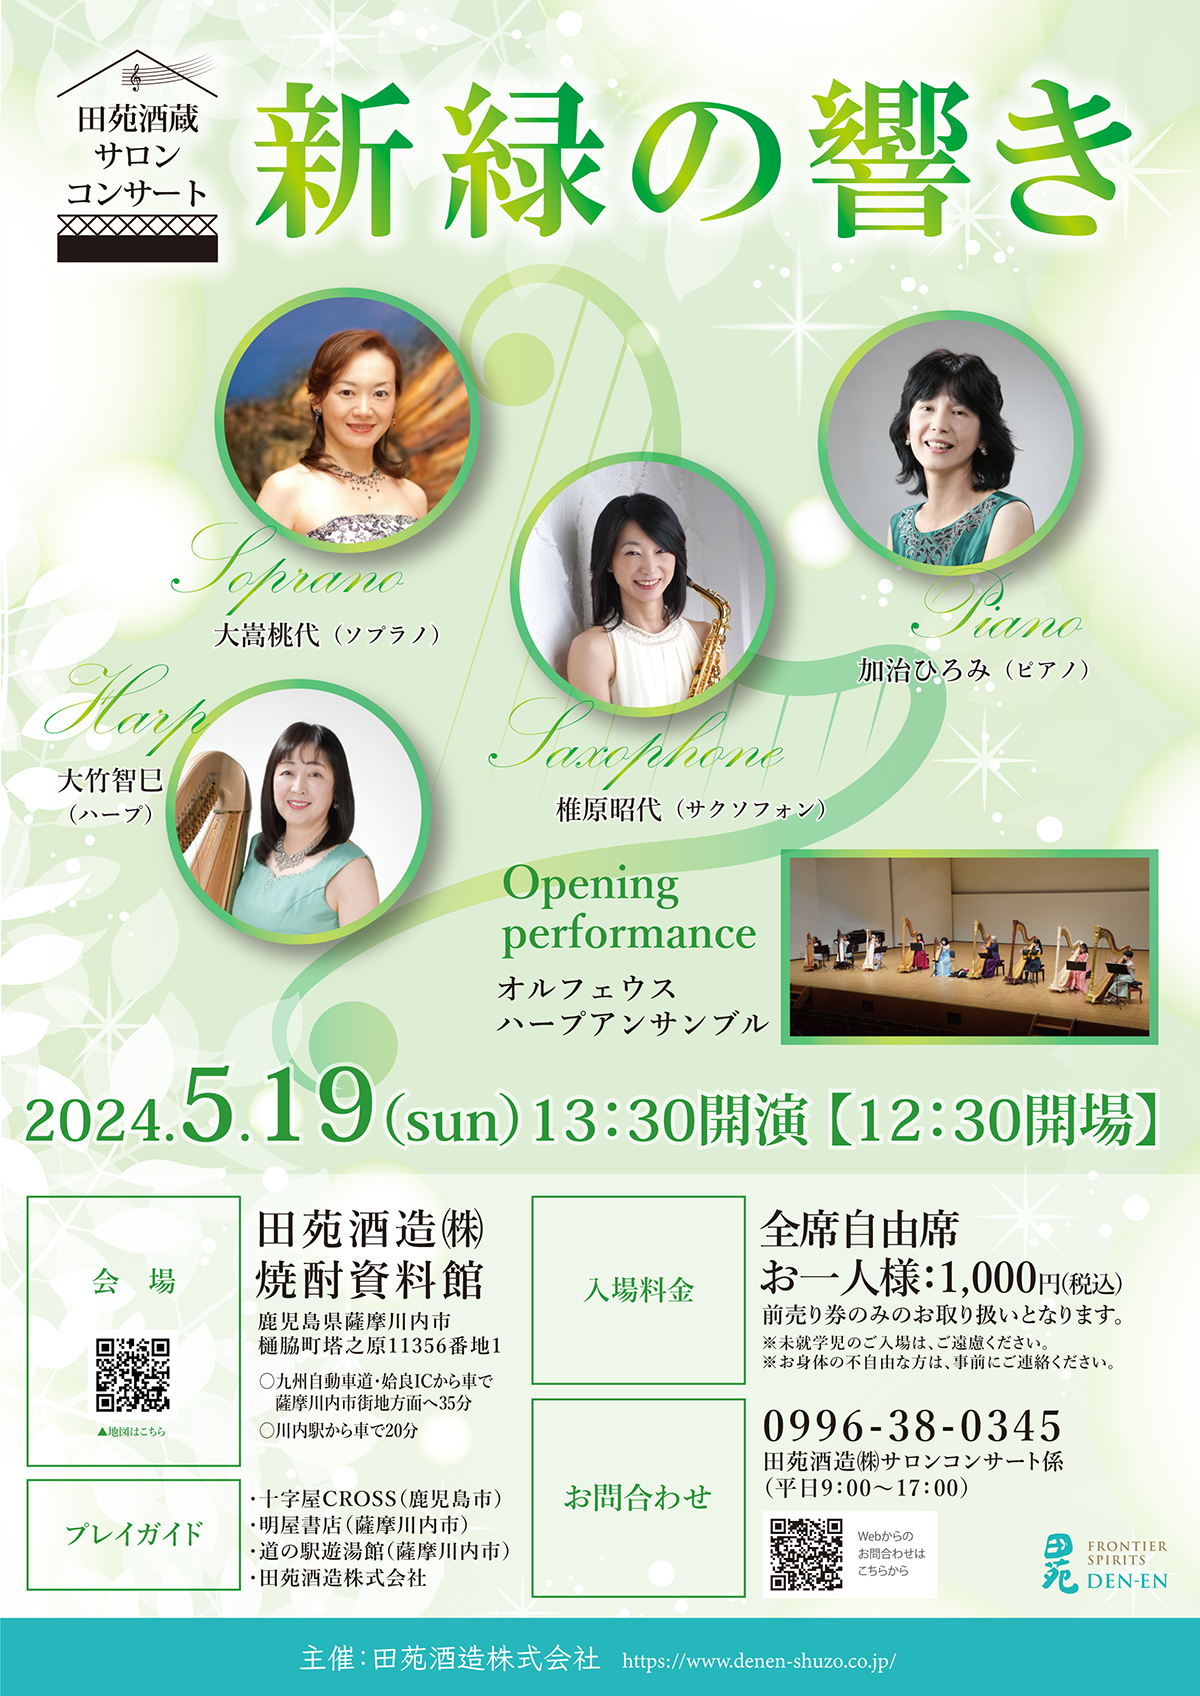 田苑酒蔵サロンコンサート「新緑の響き」